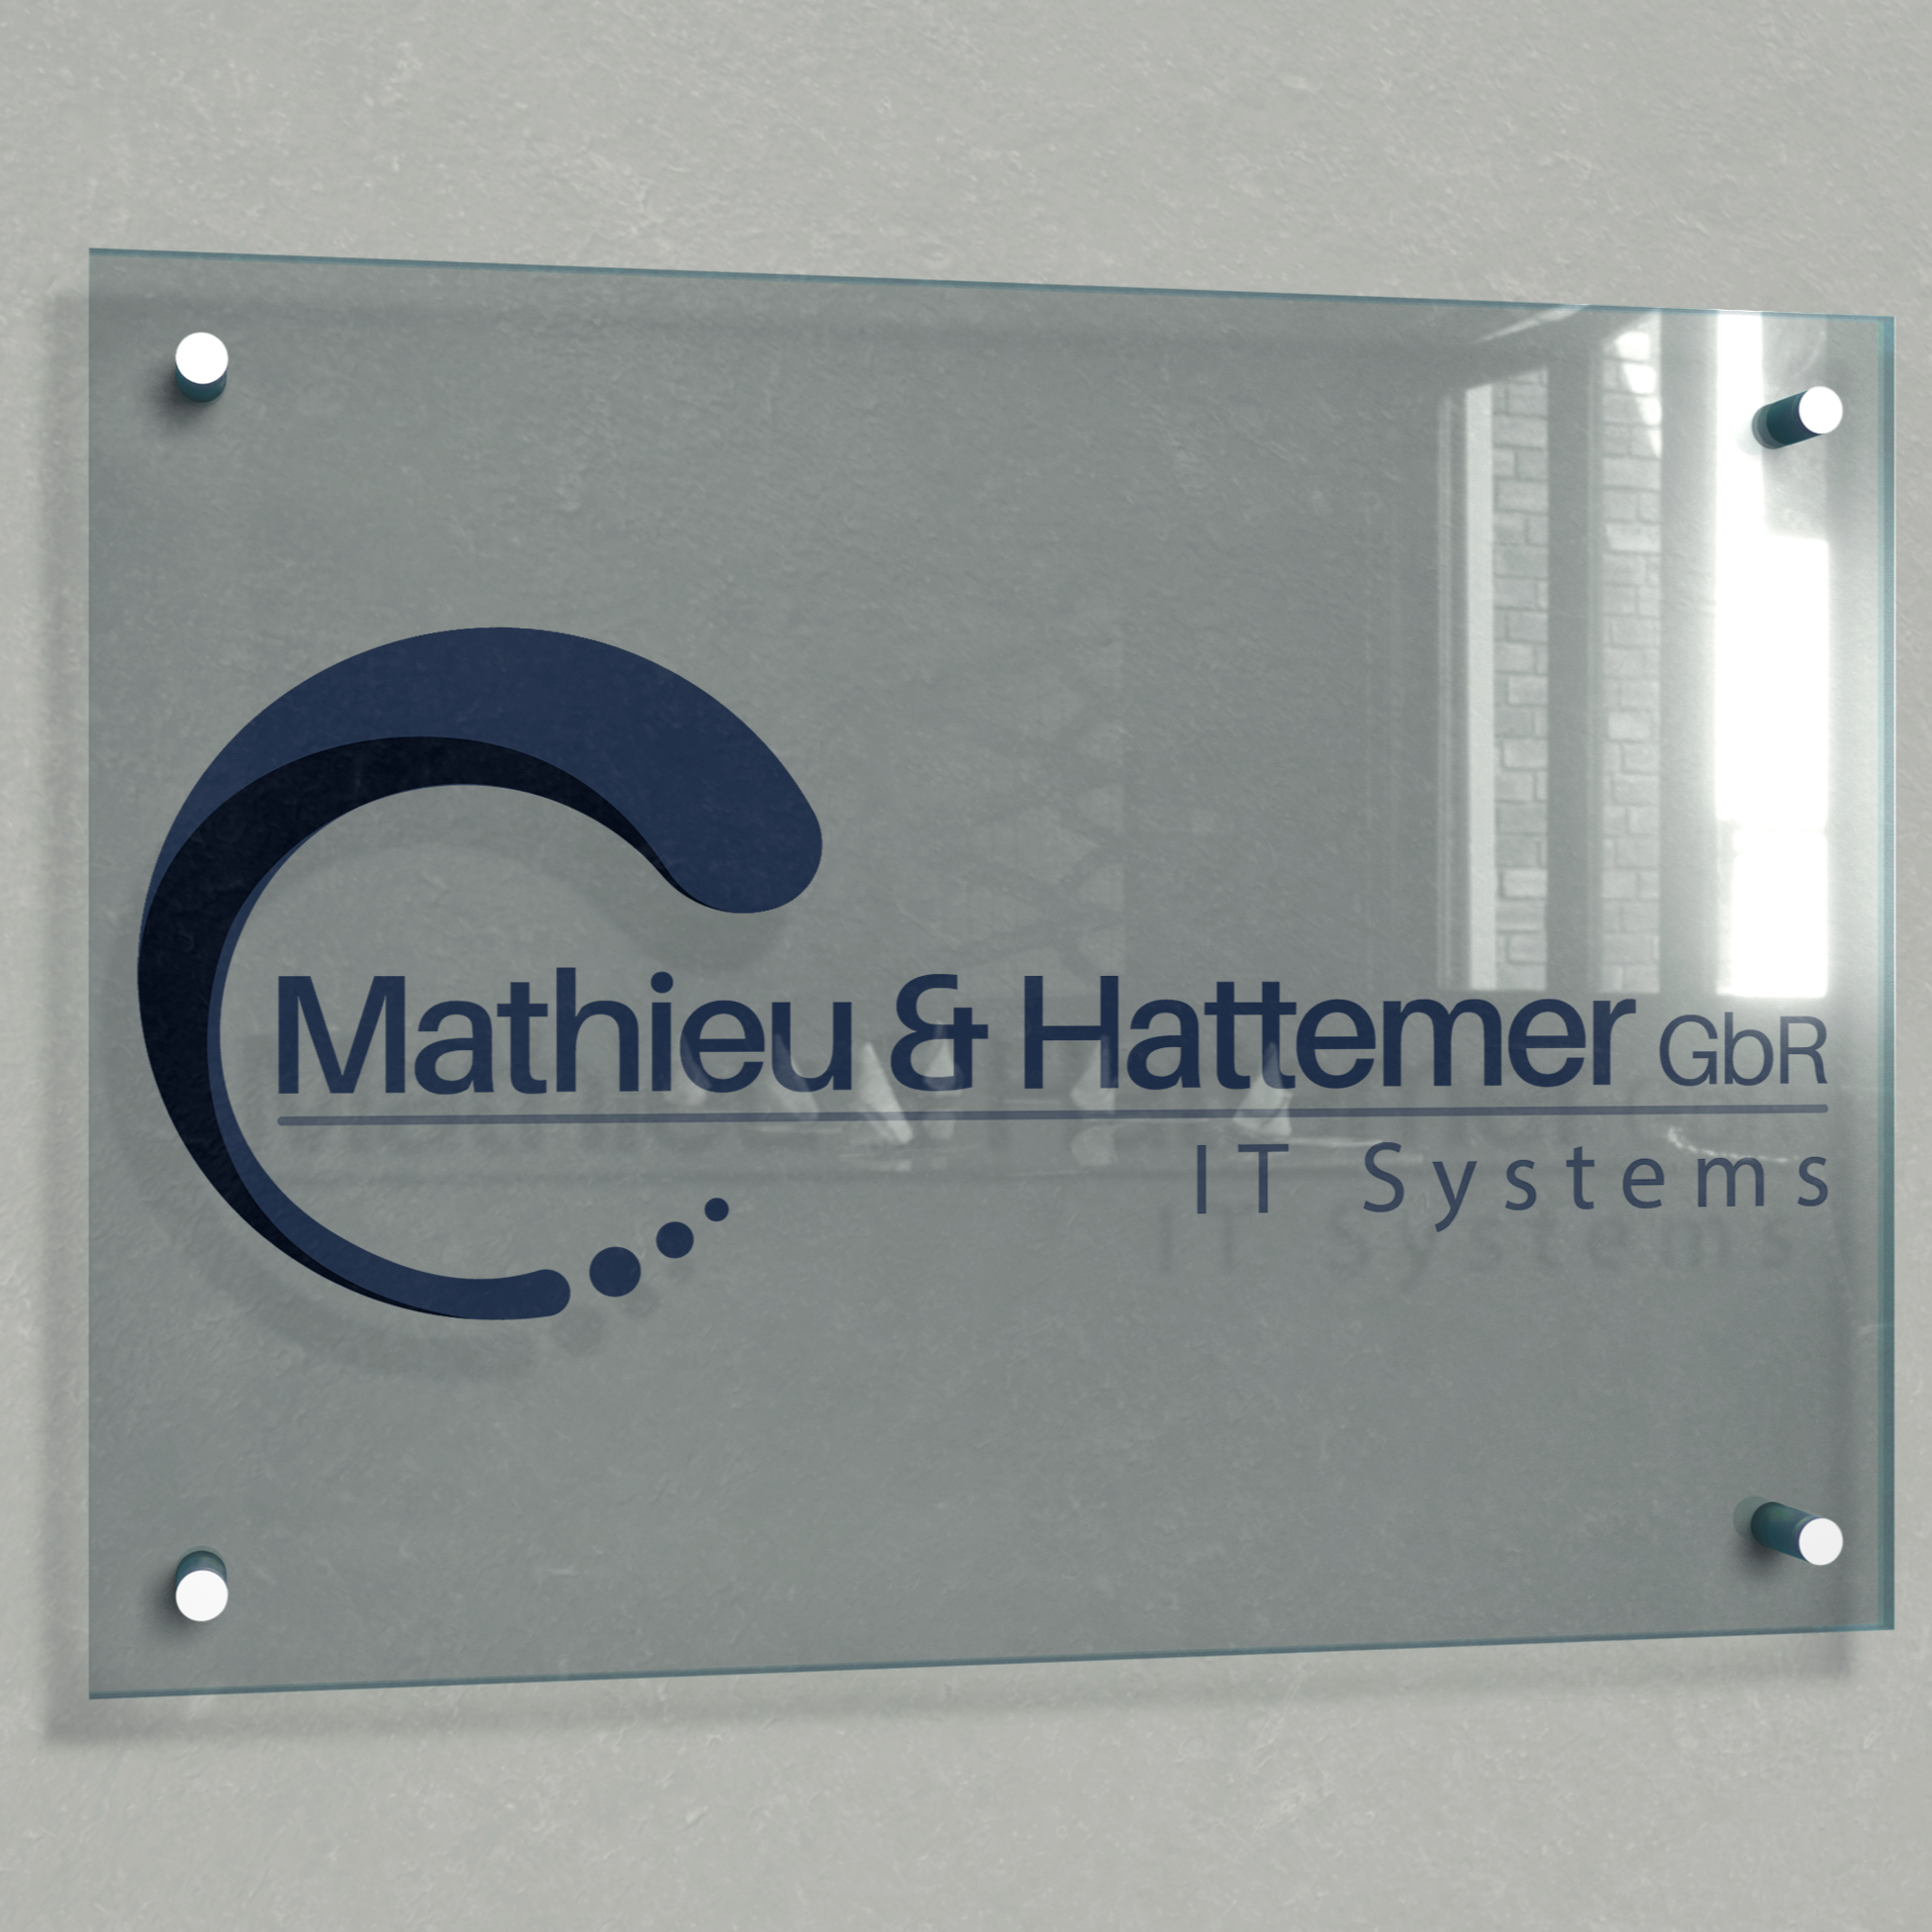 Mathieu & Hattemer GbR